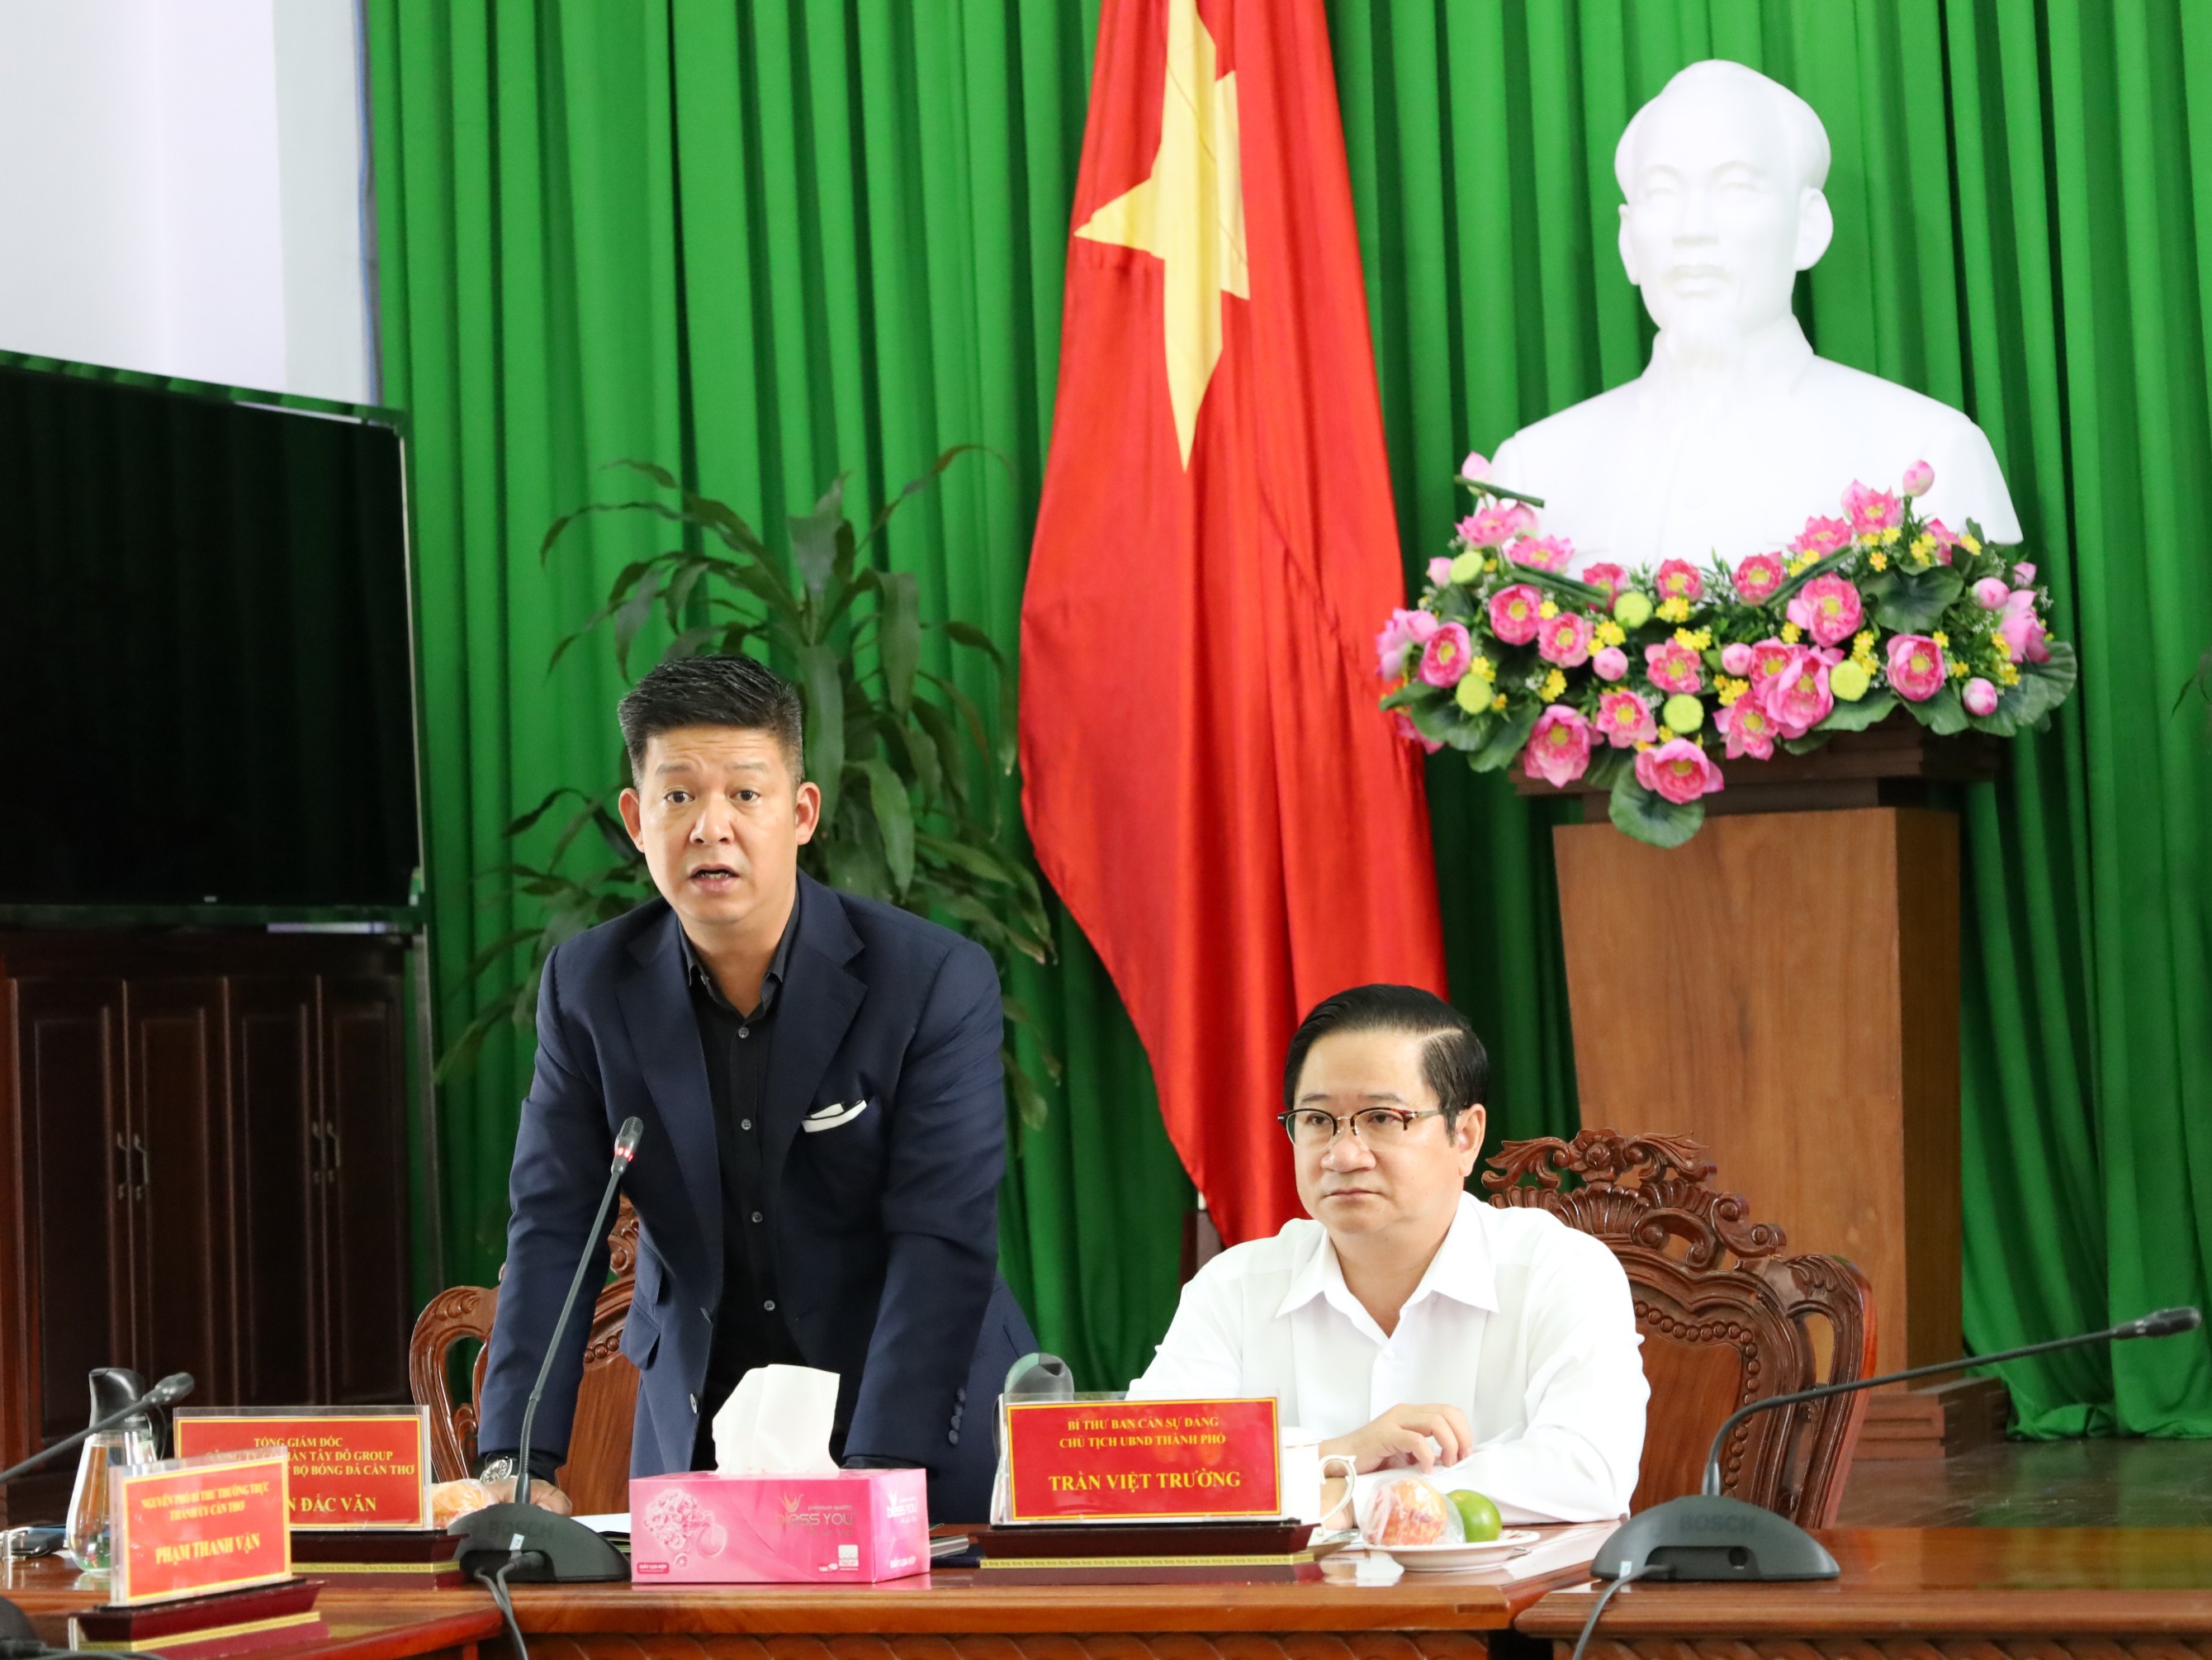 Ông Nguyễn Đắc Văn - Tổng giám đốc CTCP Tây Đô Group, Chủ tịch CLB Bóng đá Cần Thơ thuyết trình giới thiệu về đội bóng cũng như các định hướng phát triển trong tương lai.